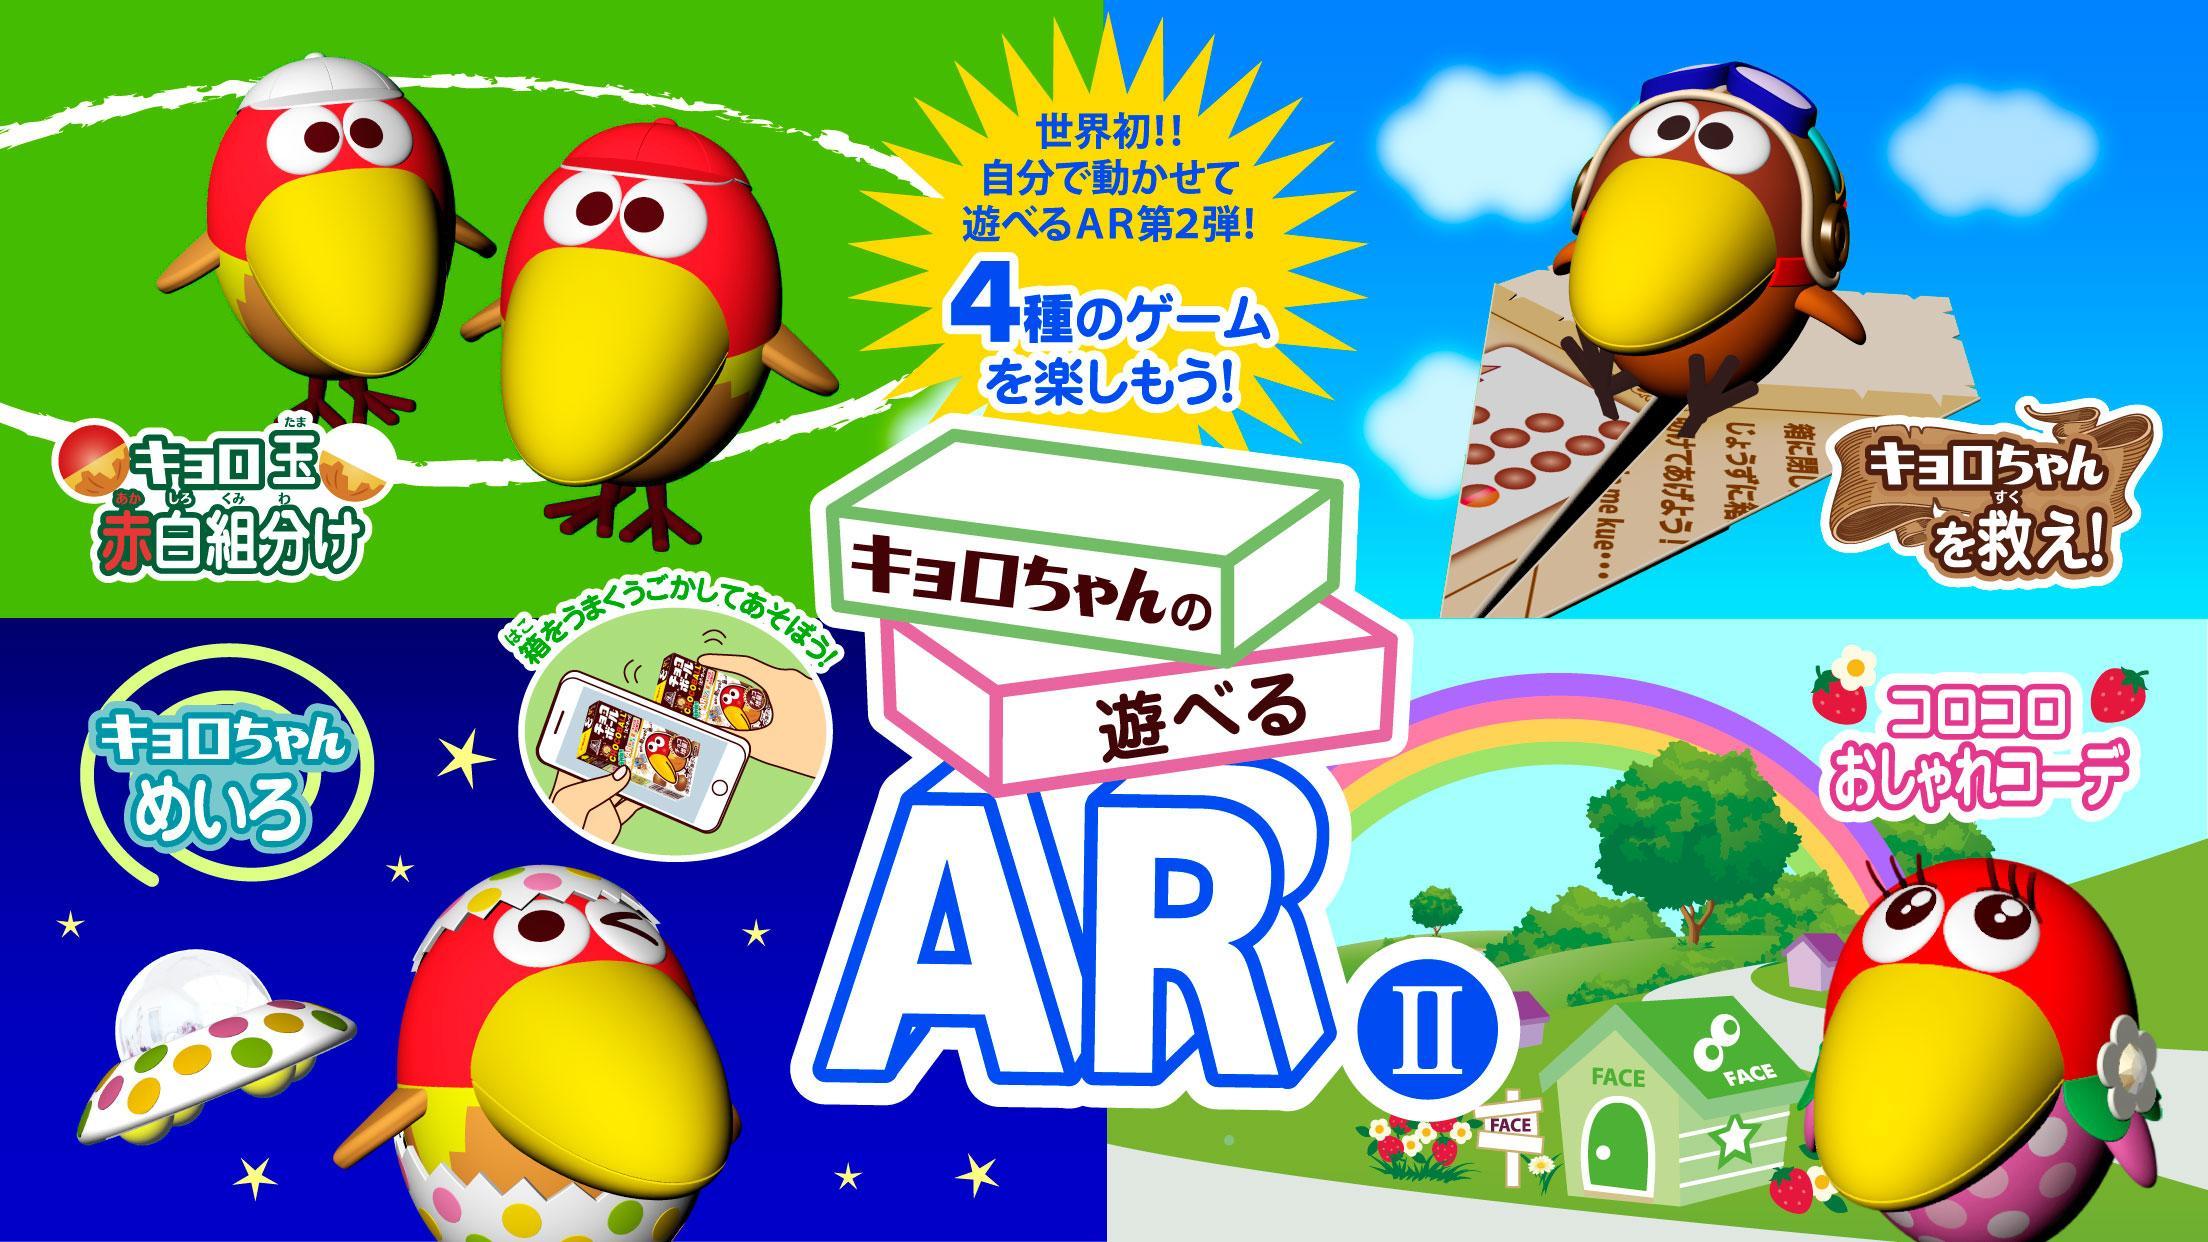 Screenshot 1 of AR II có thể chơi được của Kyoro-chan Trò chơi miễn phí để chơi với một hộp sô cô la 1.2